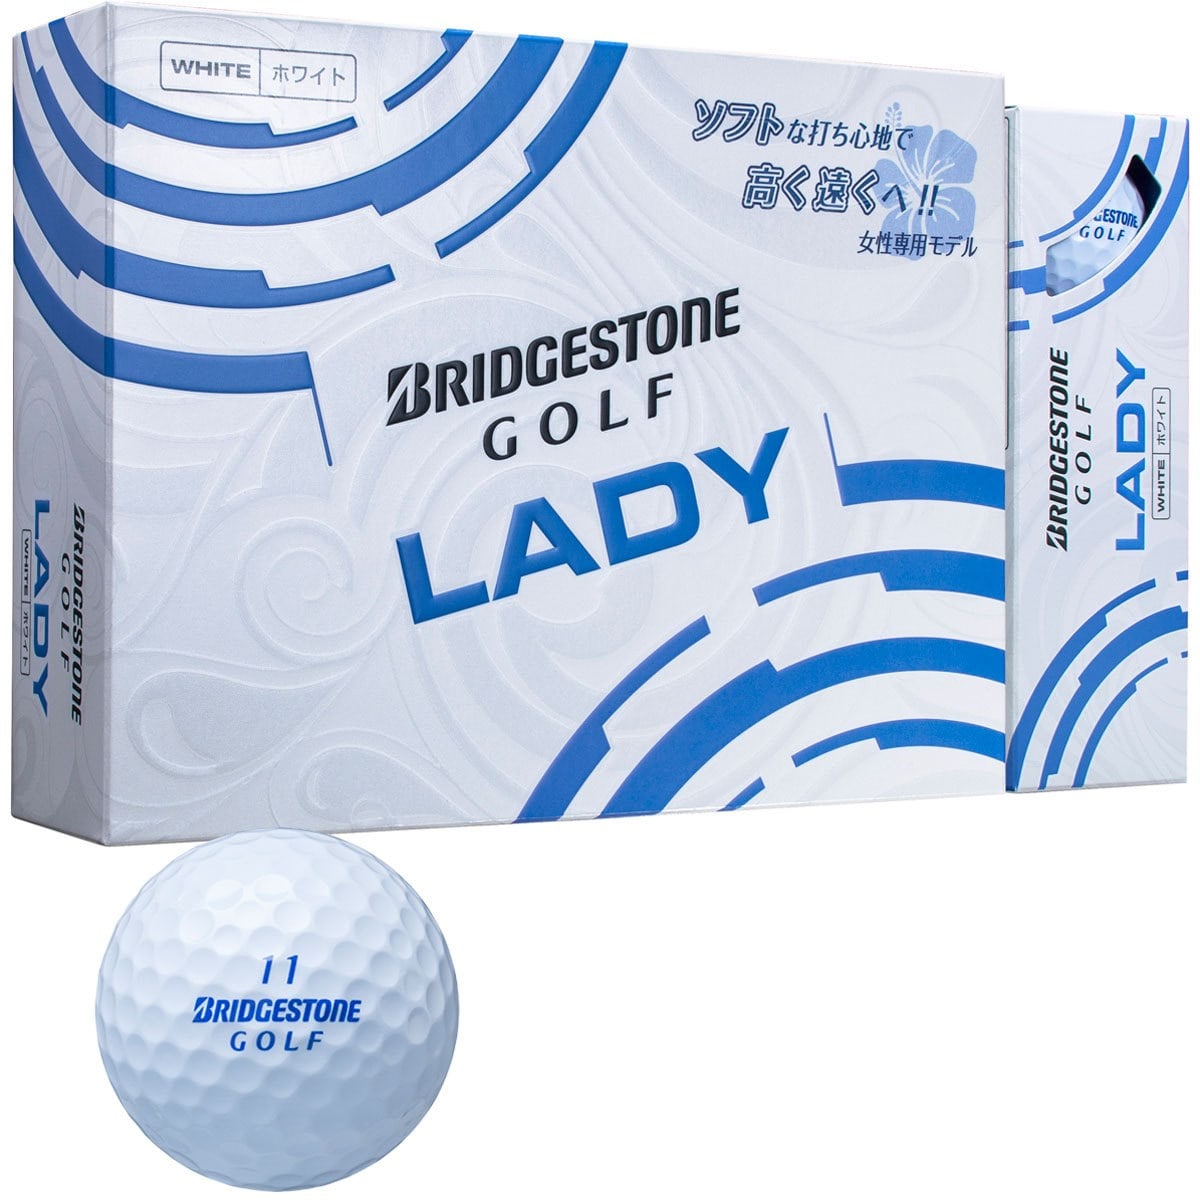 Ladyボール レディス ボール 新品 Lady ブリヂストン の通販 Gdoゴルフショップ